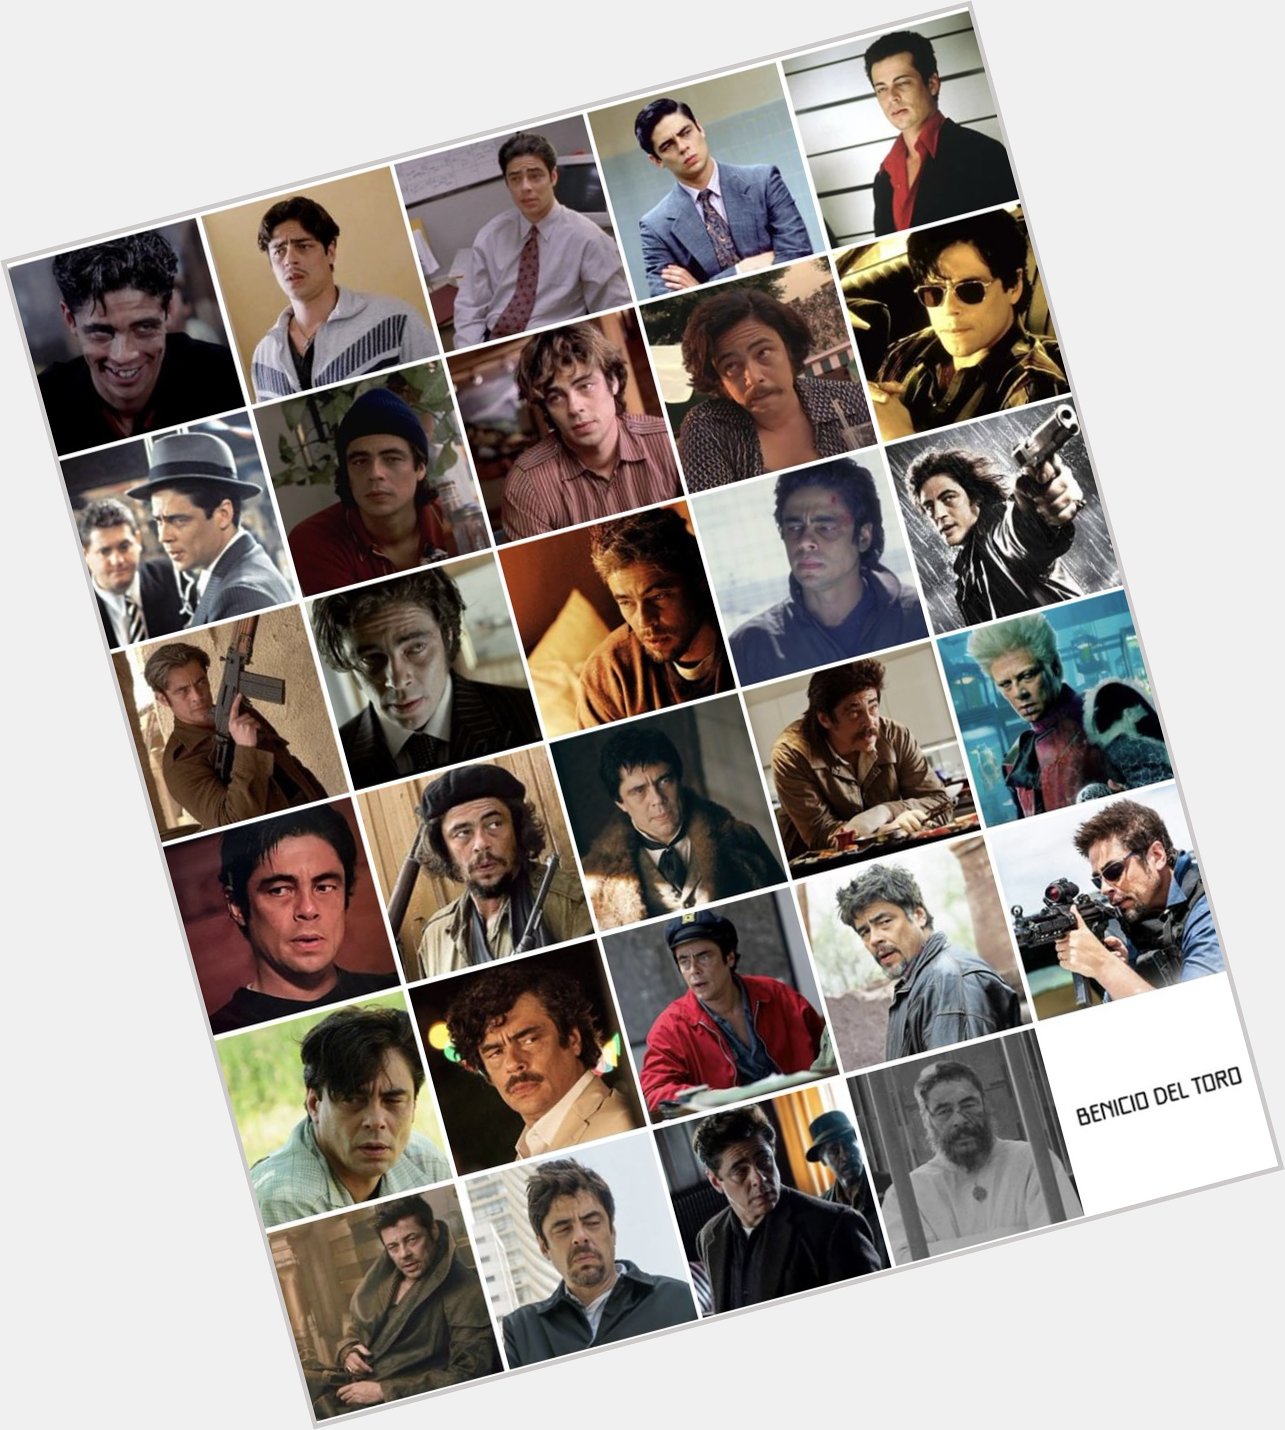 Happy birthday to the amazing actor, Benicio Del Toro 